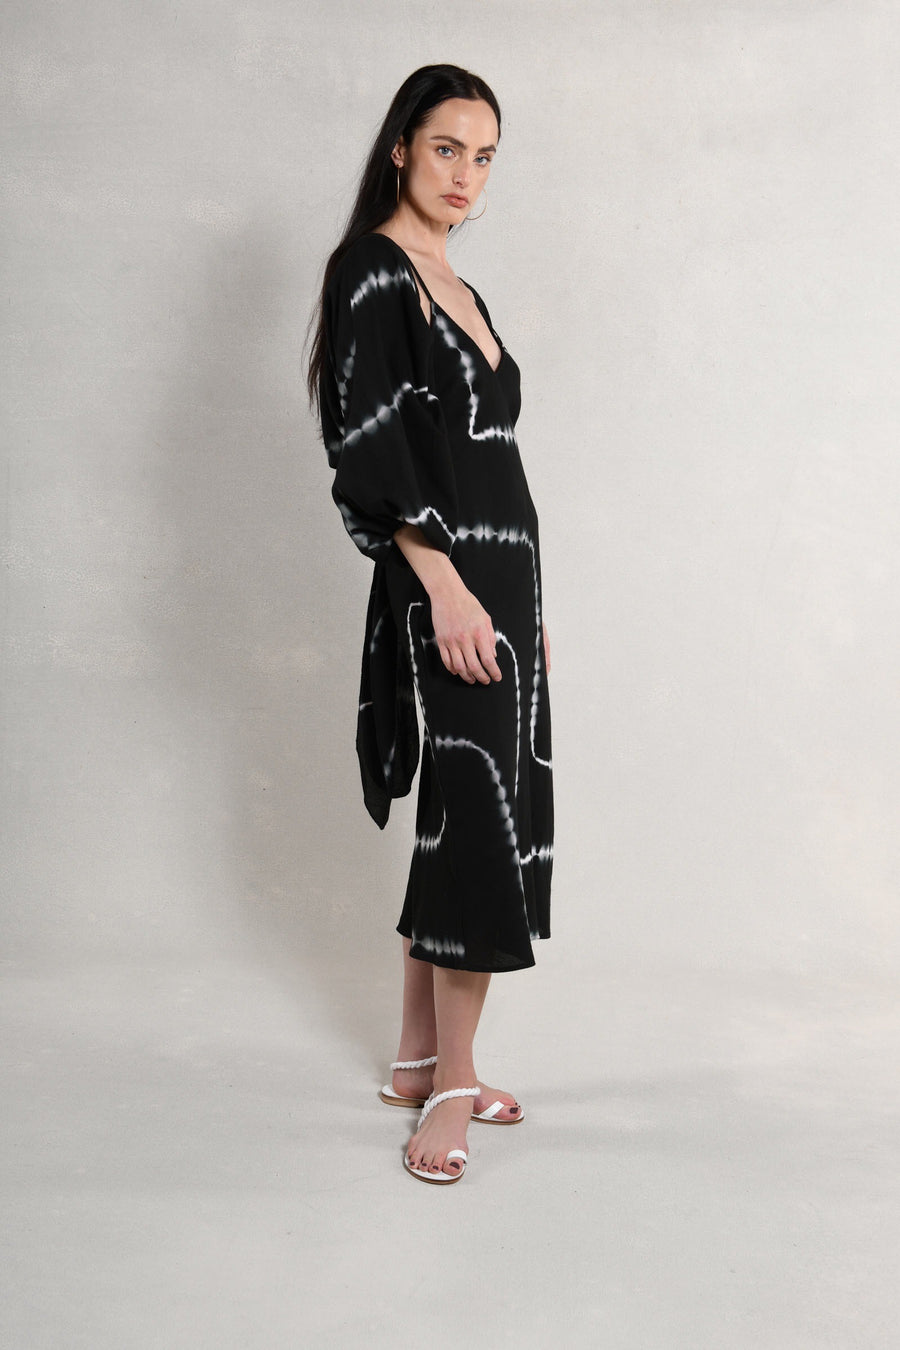 Candace Wrap Top & Slip Dress : Black & White Tie Dye Burlap